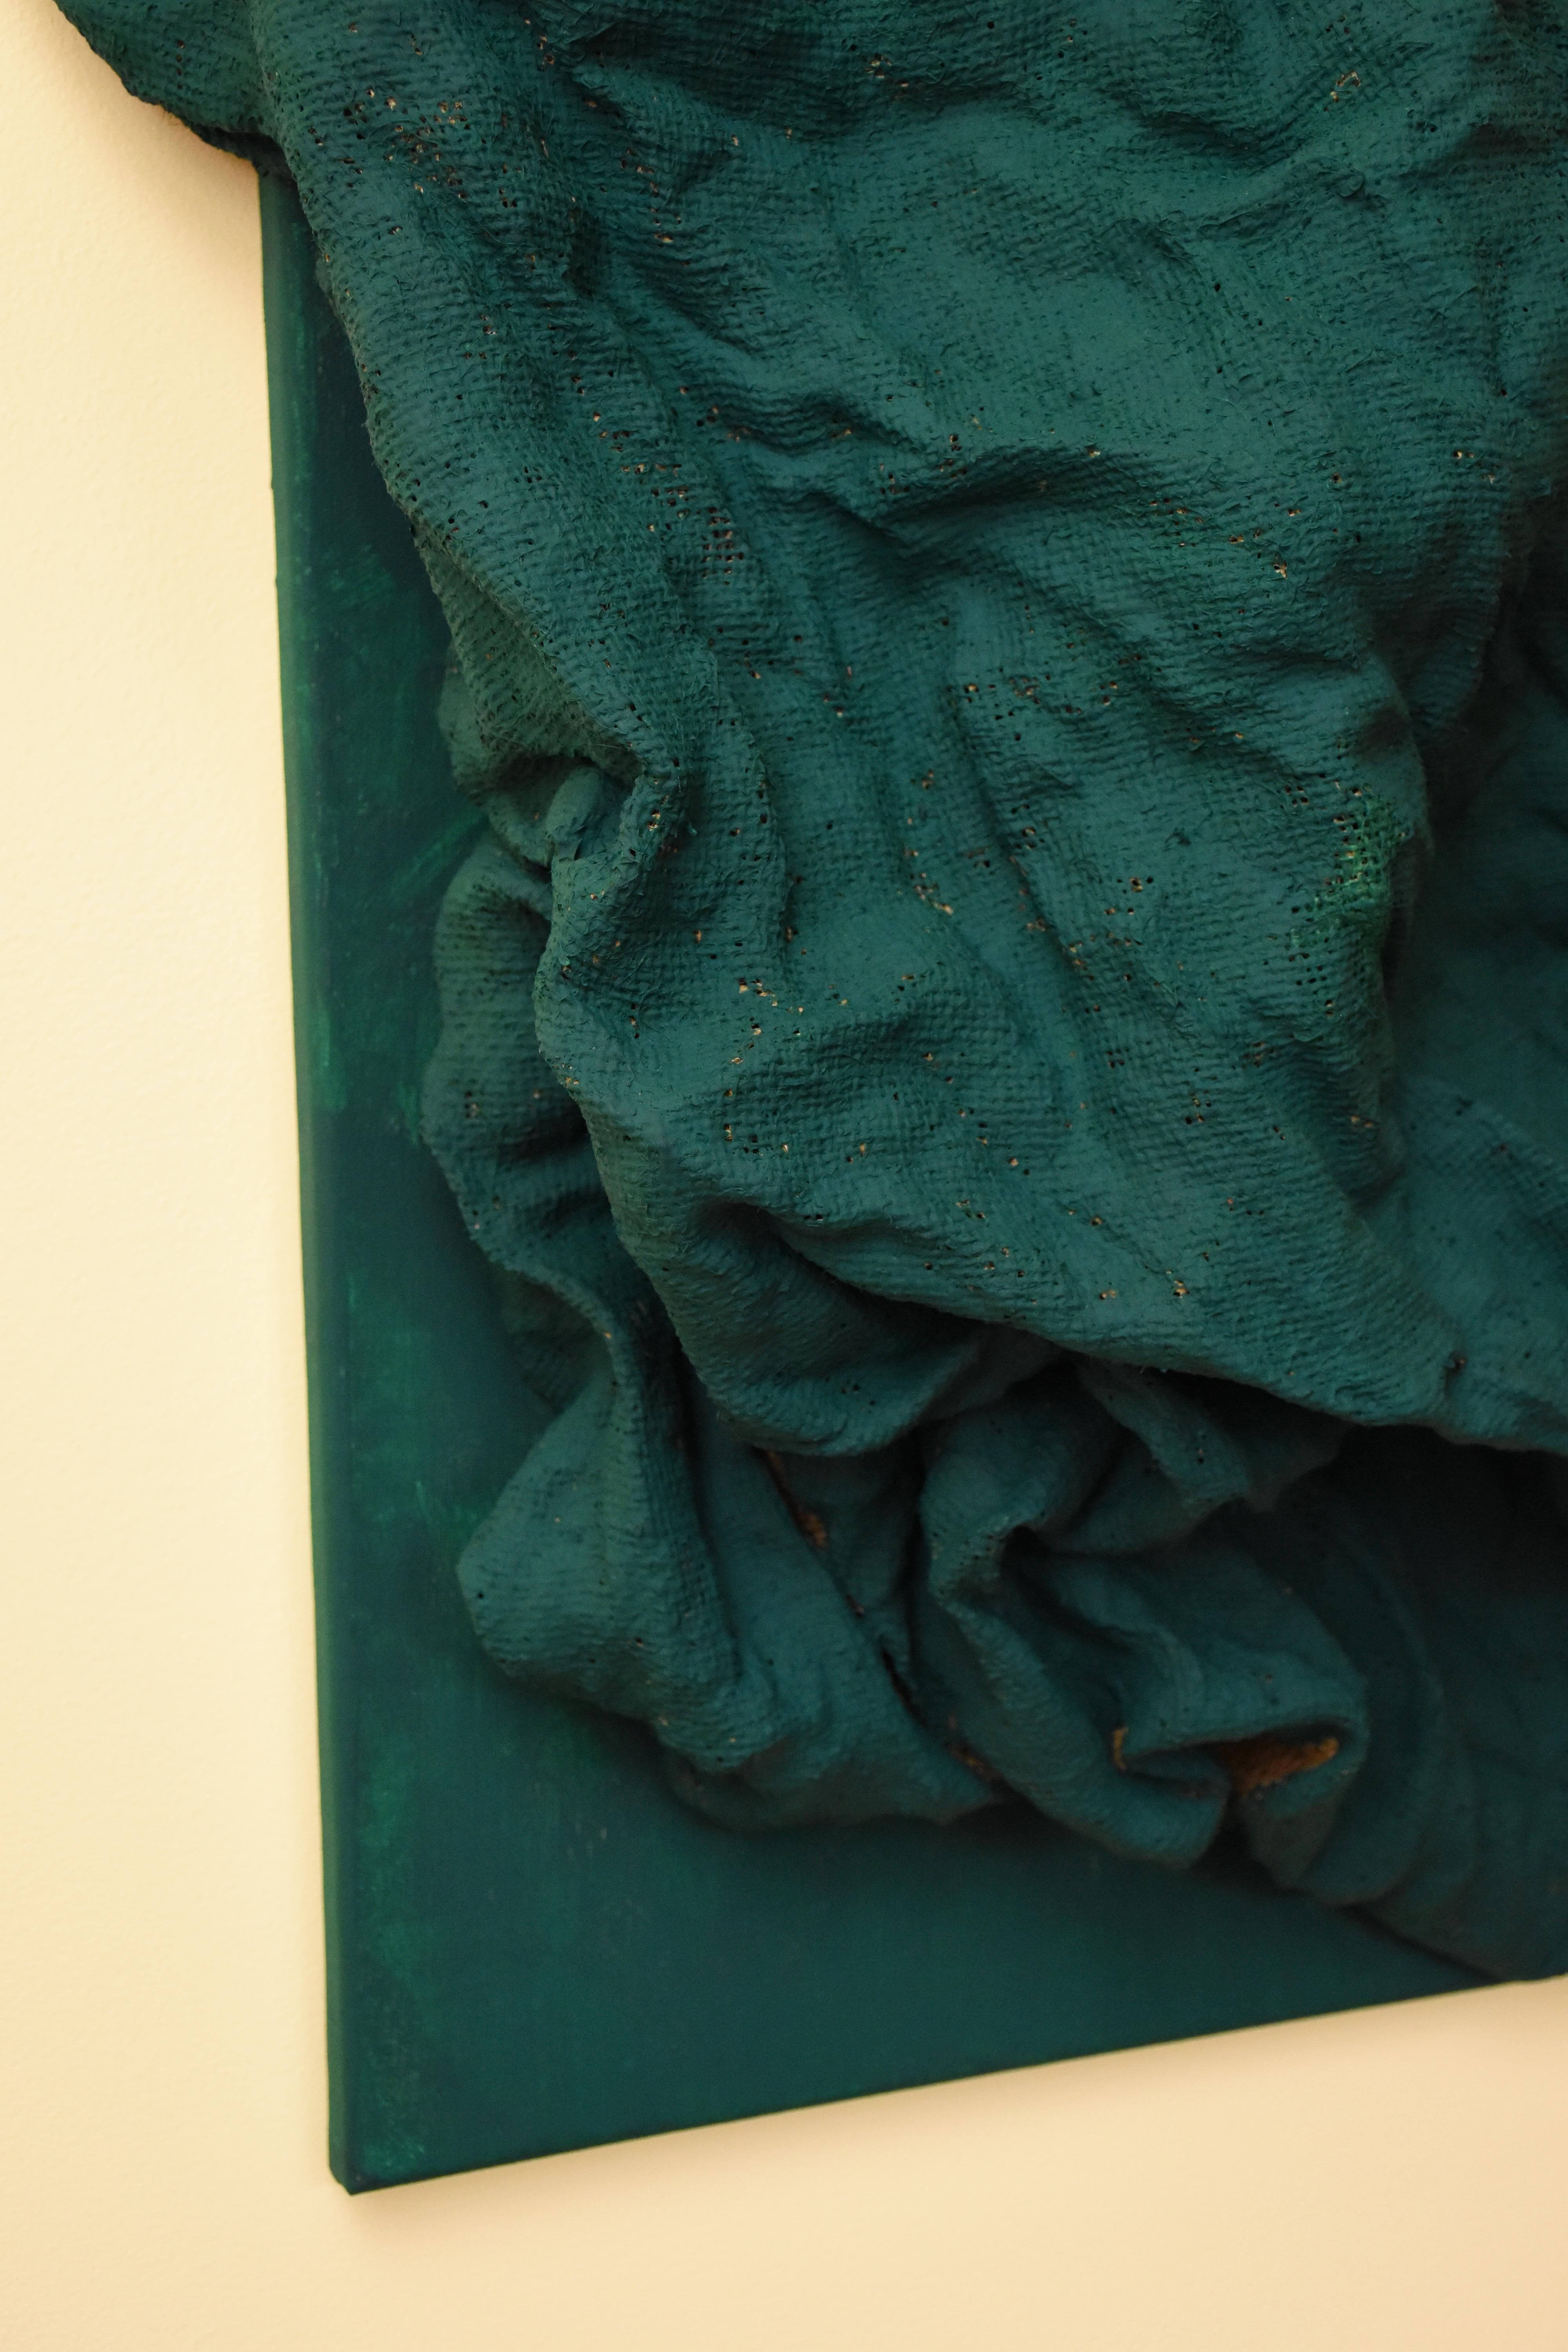 Emerald Green Folds (hardened fabric, wall green art, contemporary art design) - Sculpture by Chloe Hedden